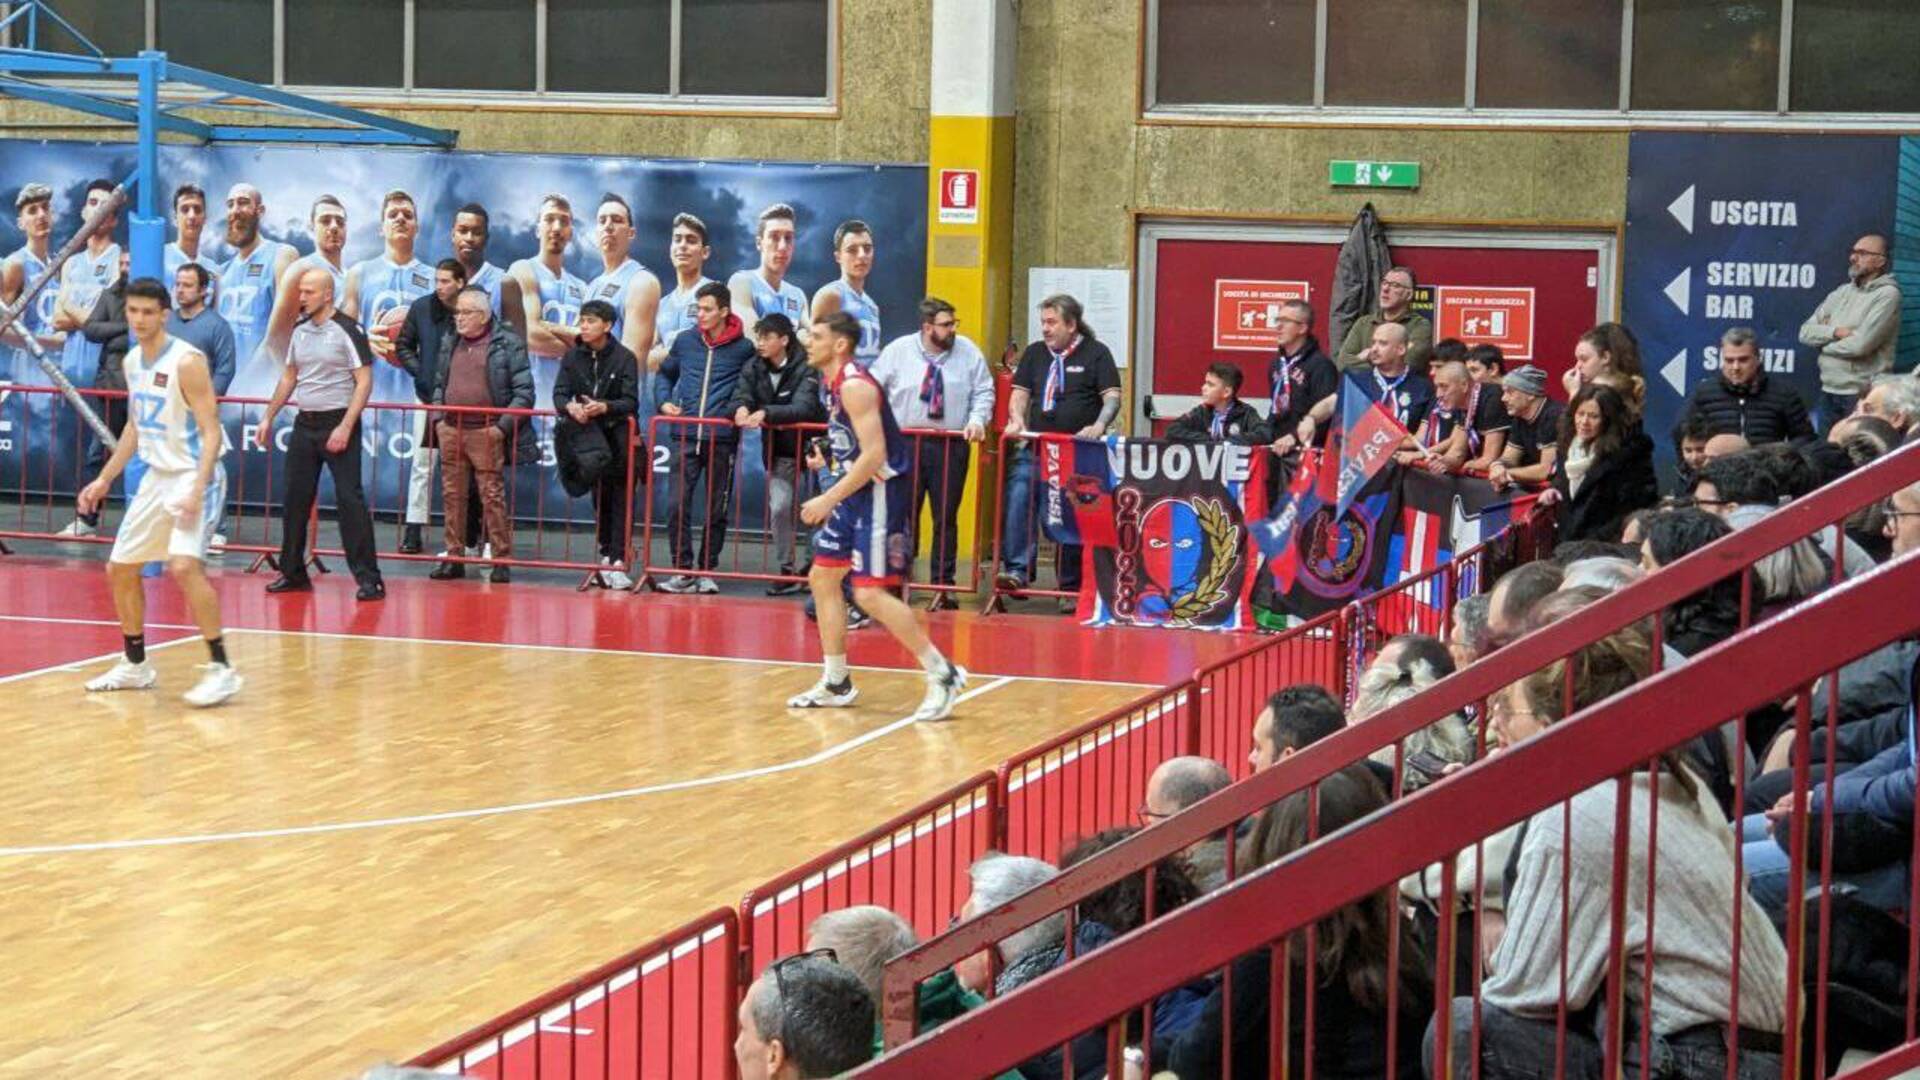 Basket, giudice sportivo: sanzione ai tifosi Pavia, prossimo avversario dell’Az Saronno